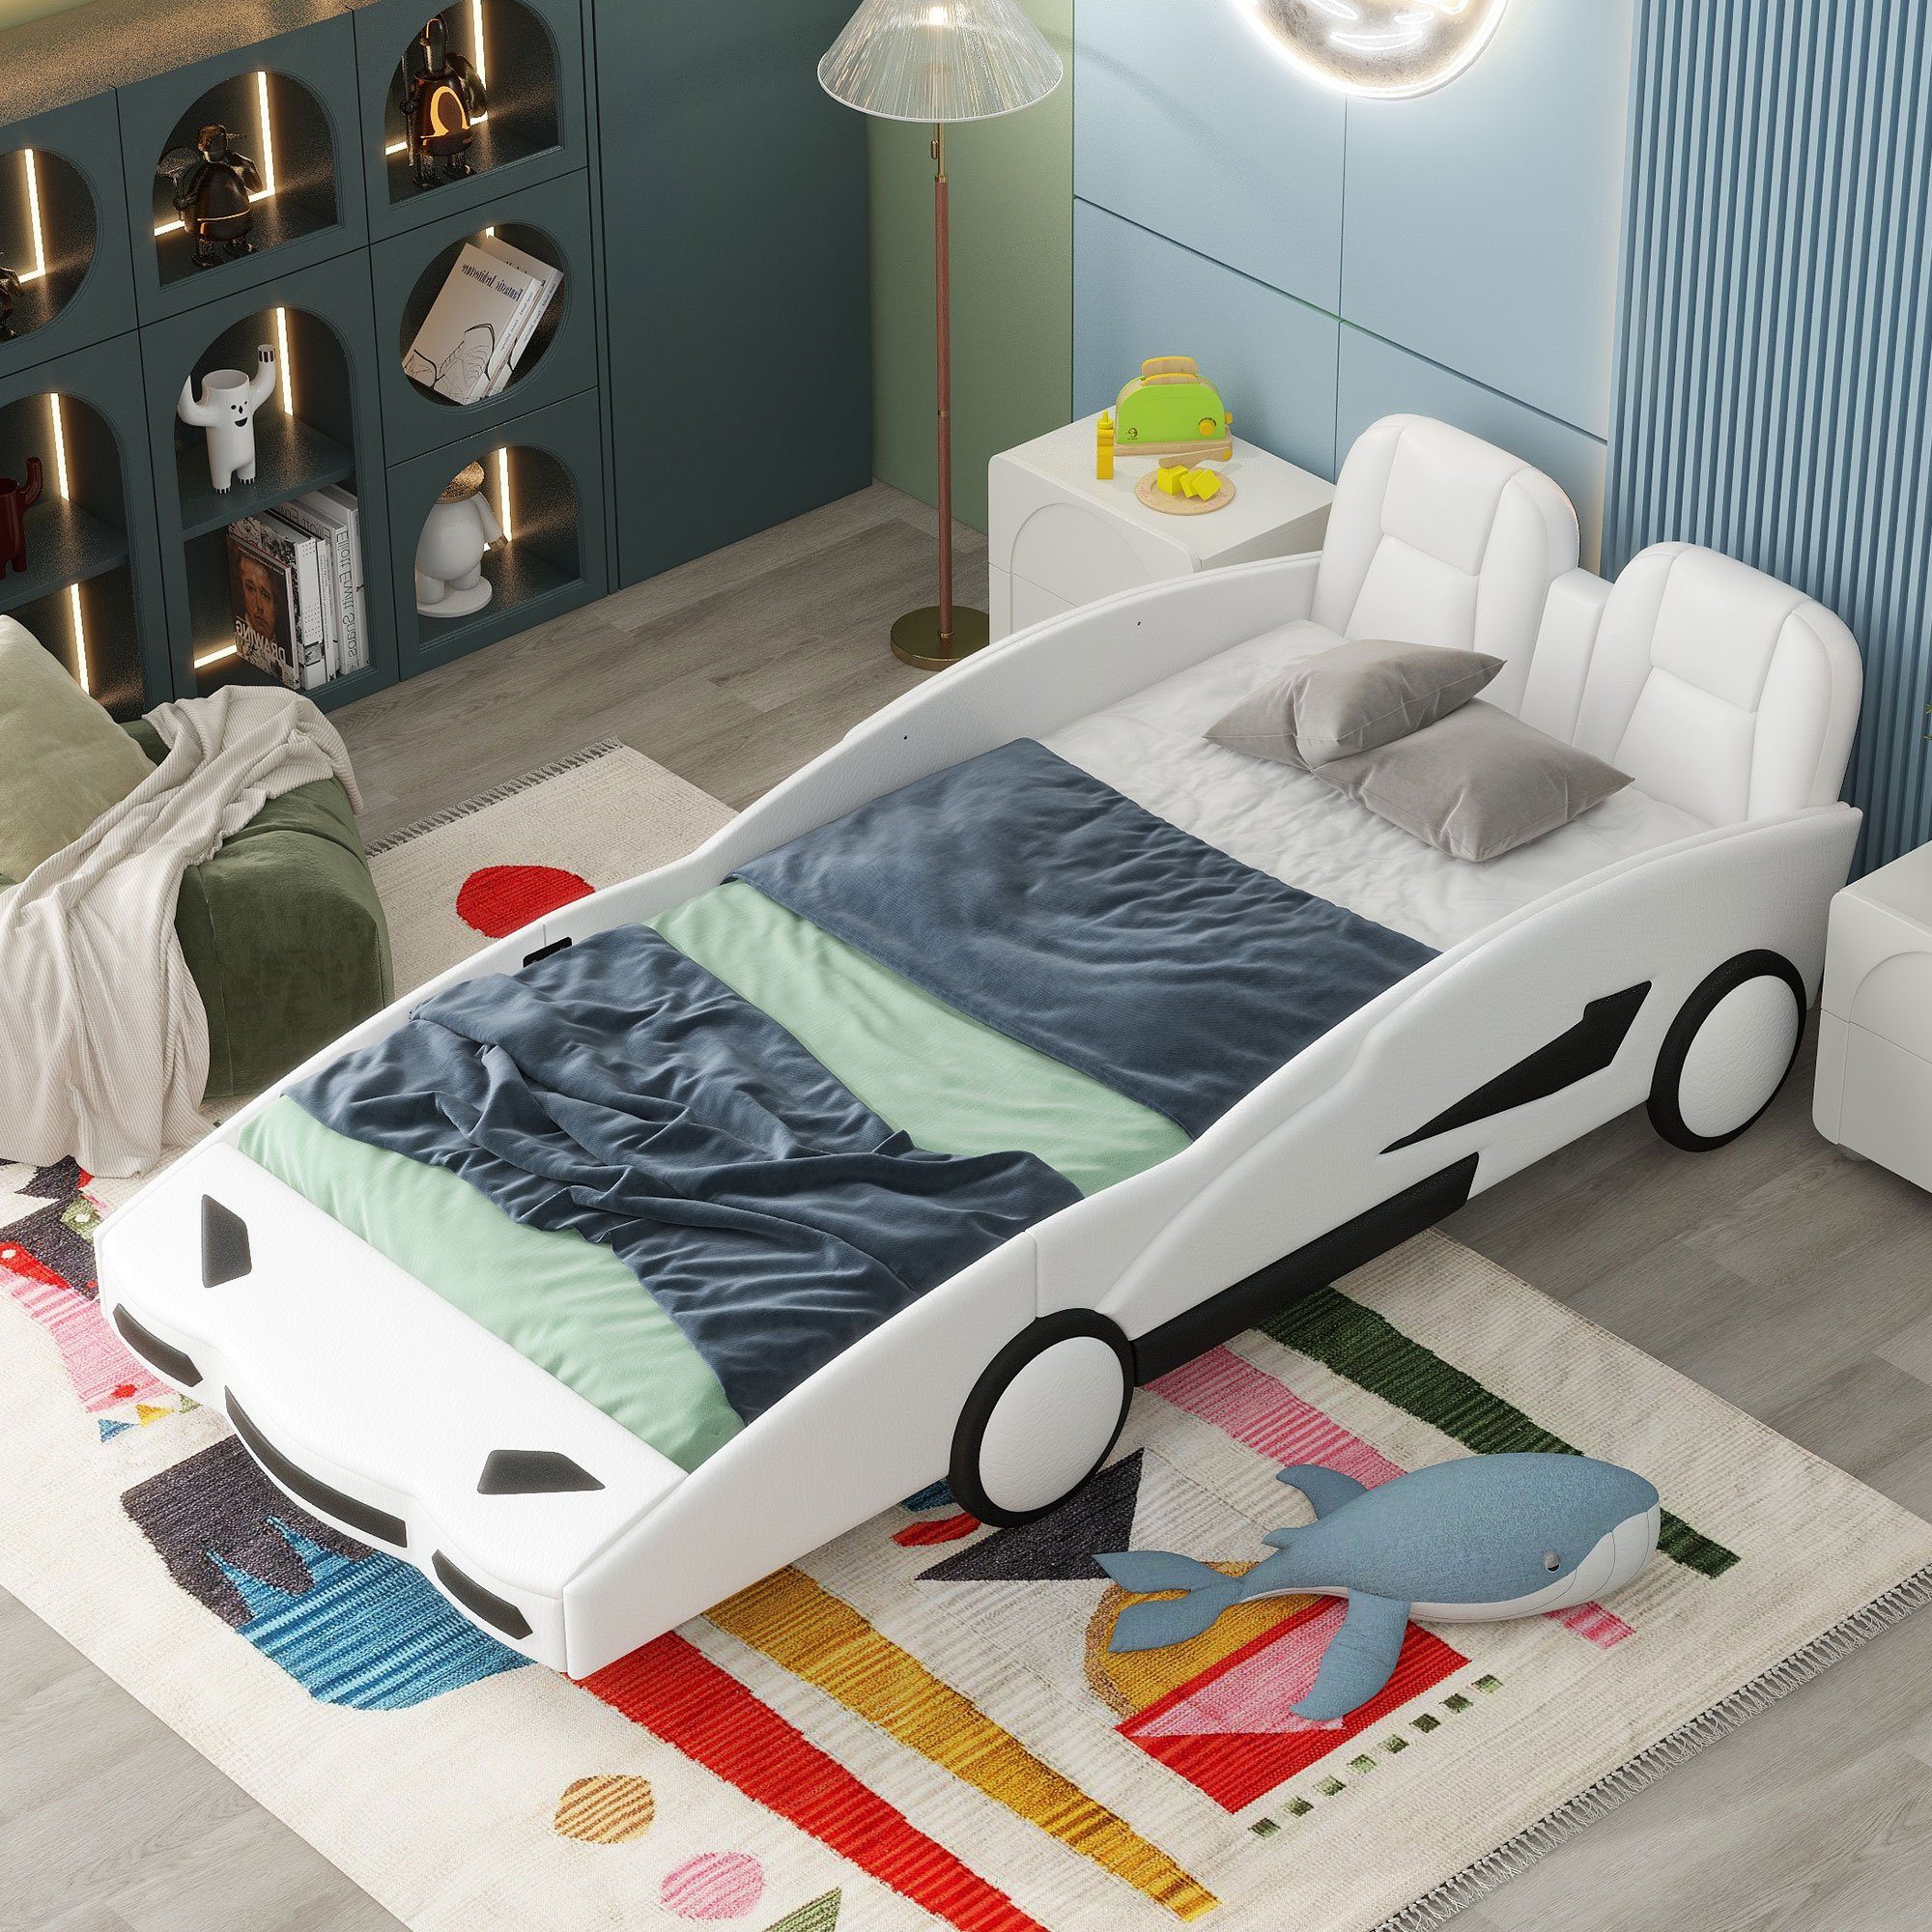 Ulife Autobett Kinderbett Spielbett Flachbett Weiß Kunstleder mit Rausfallschutz, 90×200cm